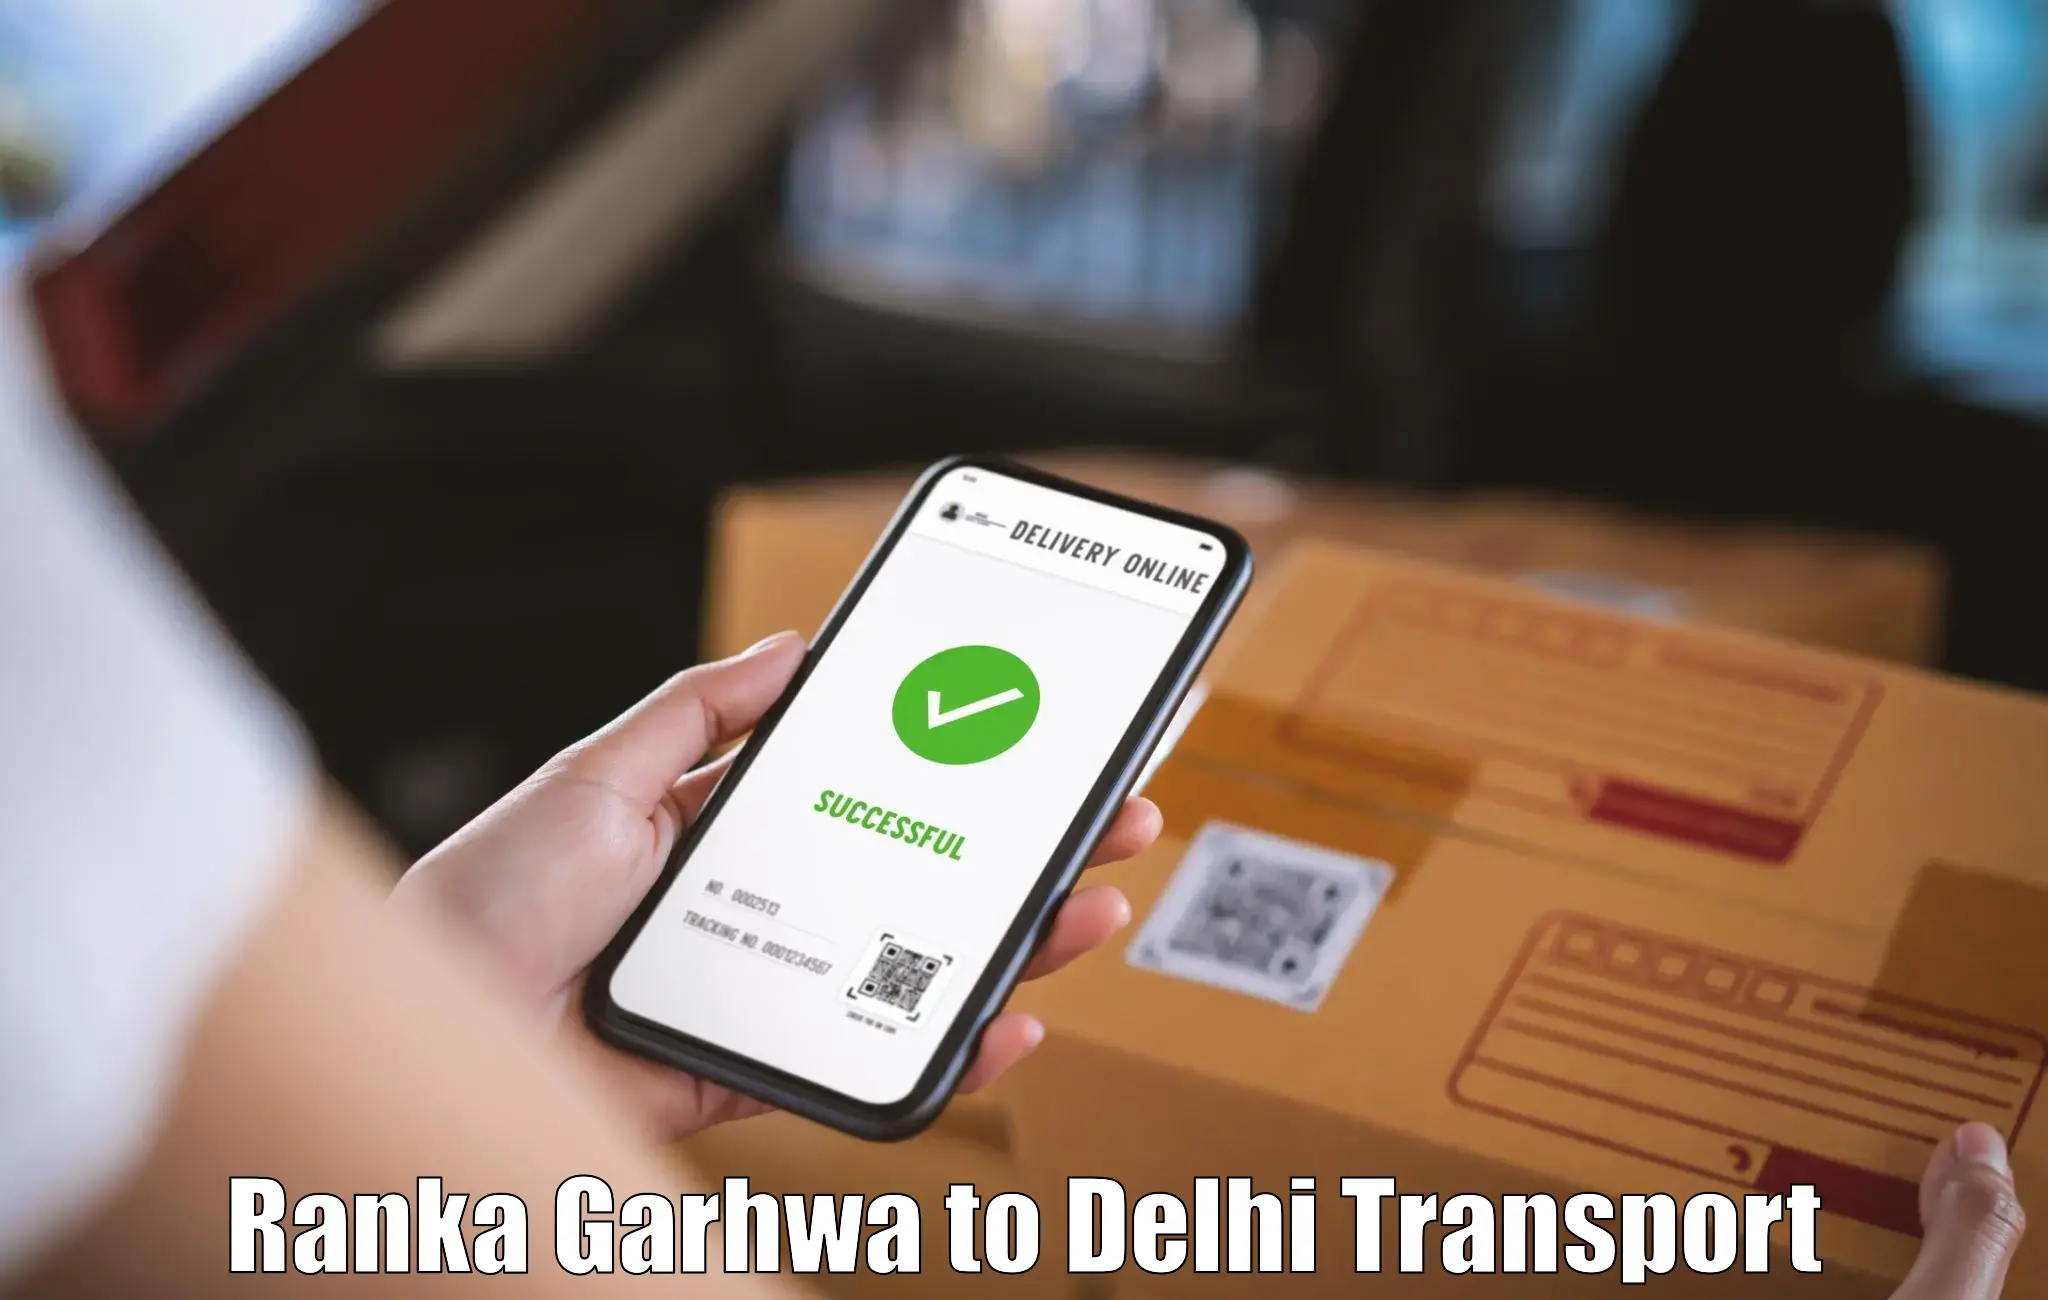 Nearby transport service Ranka Garhwa to IIT Delhi